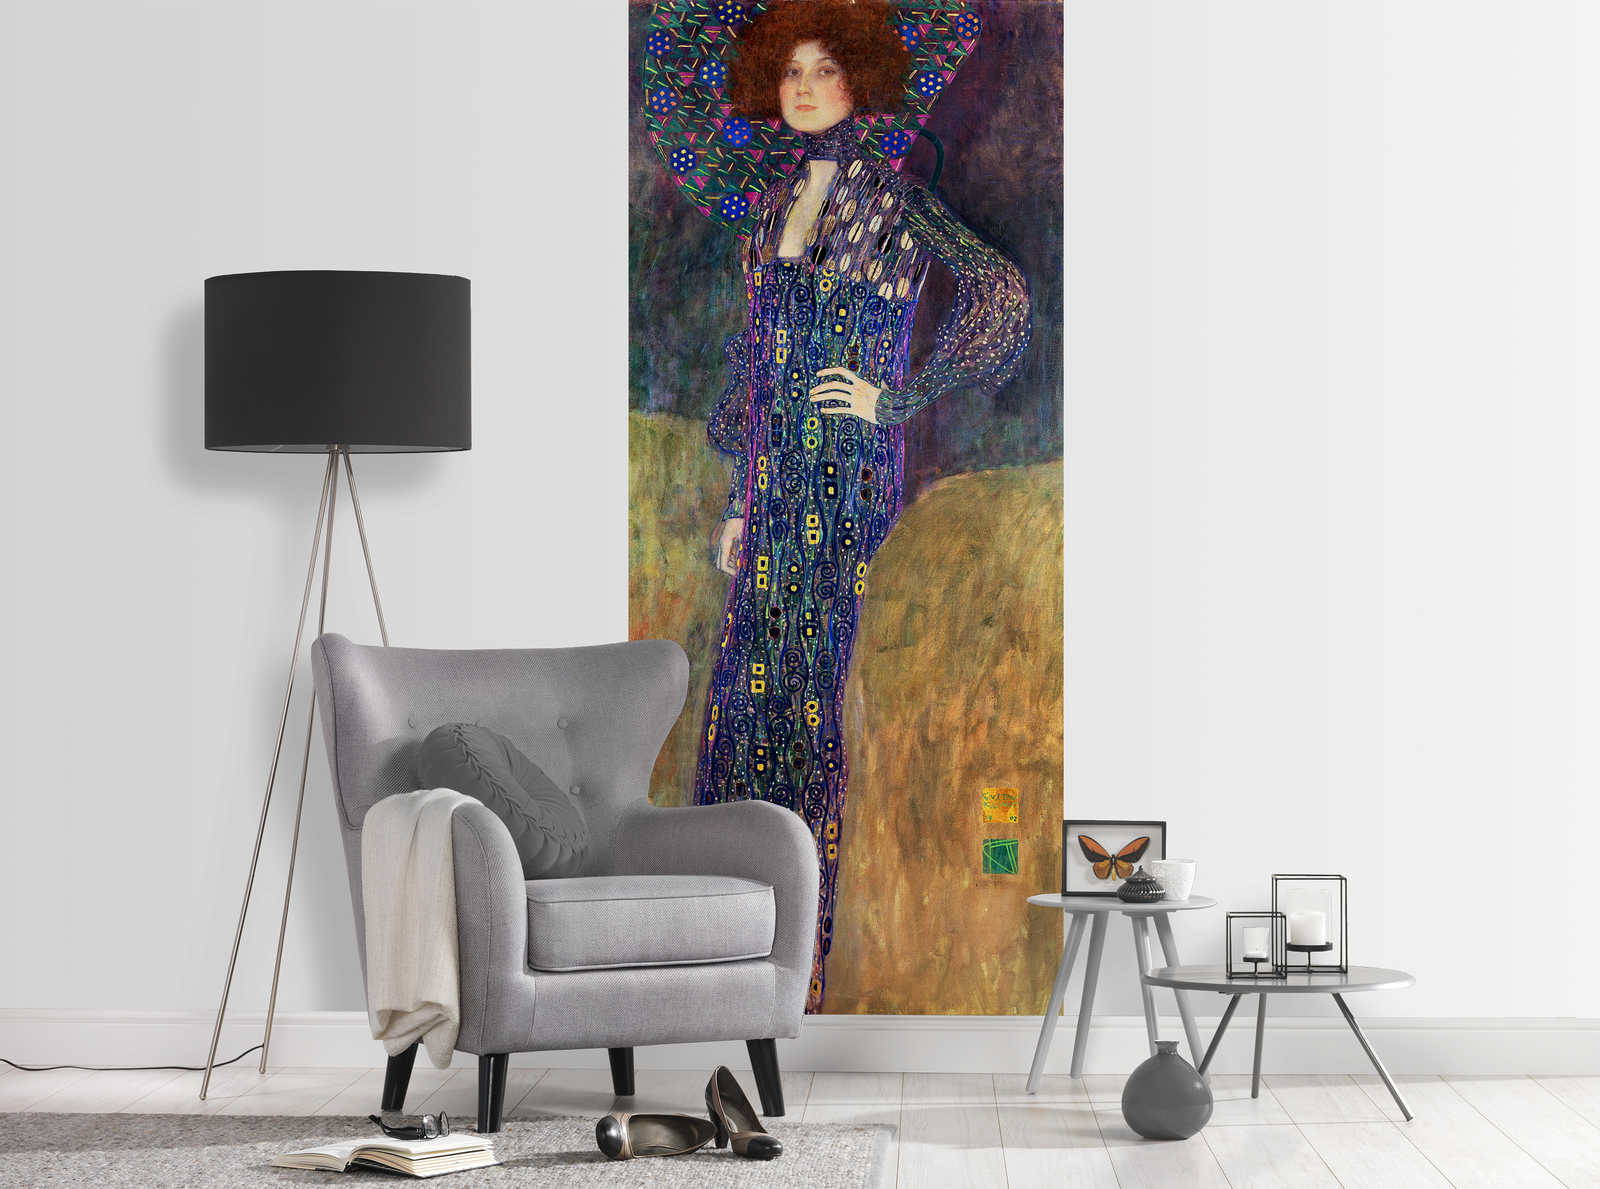             Fototapete "Emilie Floege" von Gustav Klimt
        